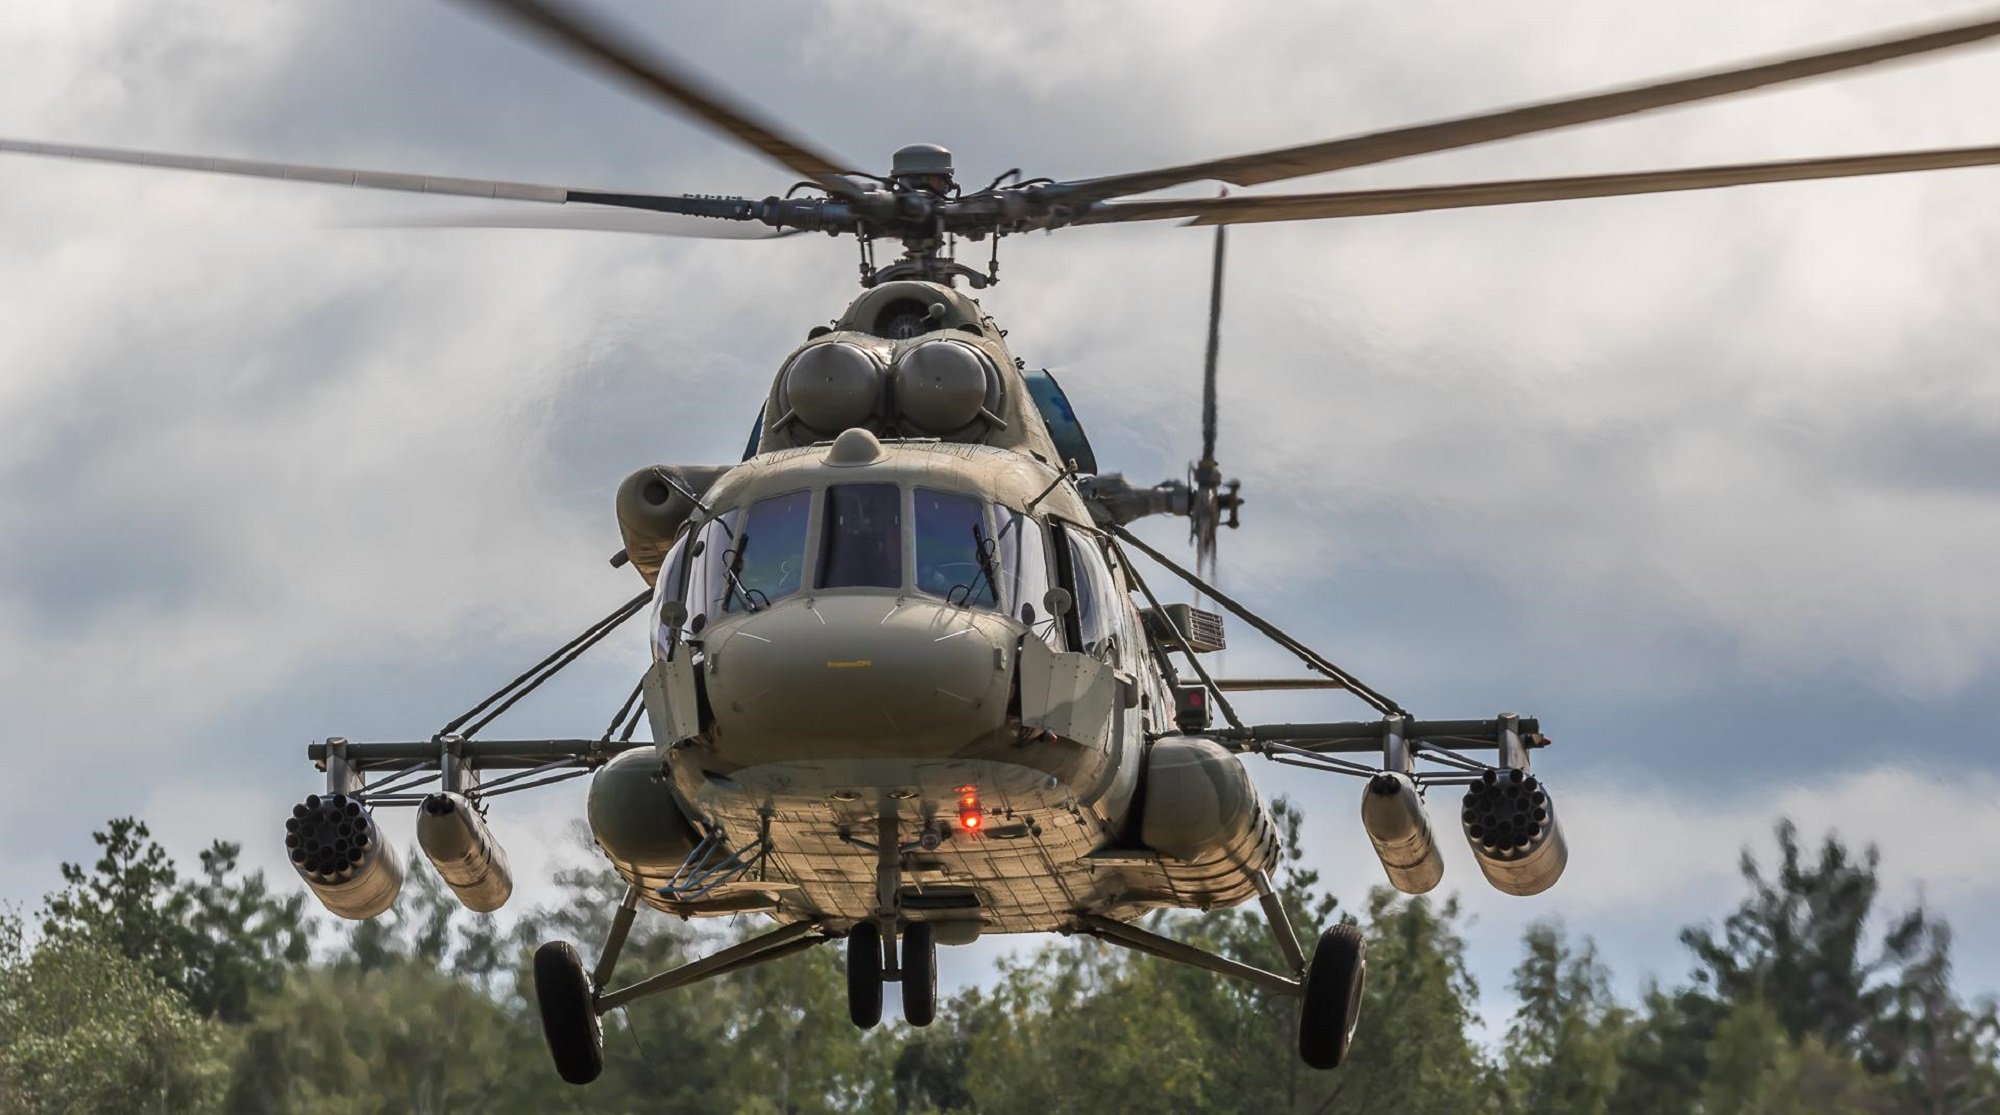 

Экипаж упавшего под Гатчиной Ми-8 ценой своих жизней отвел вертолет от жилых домов

